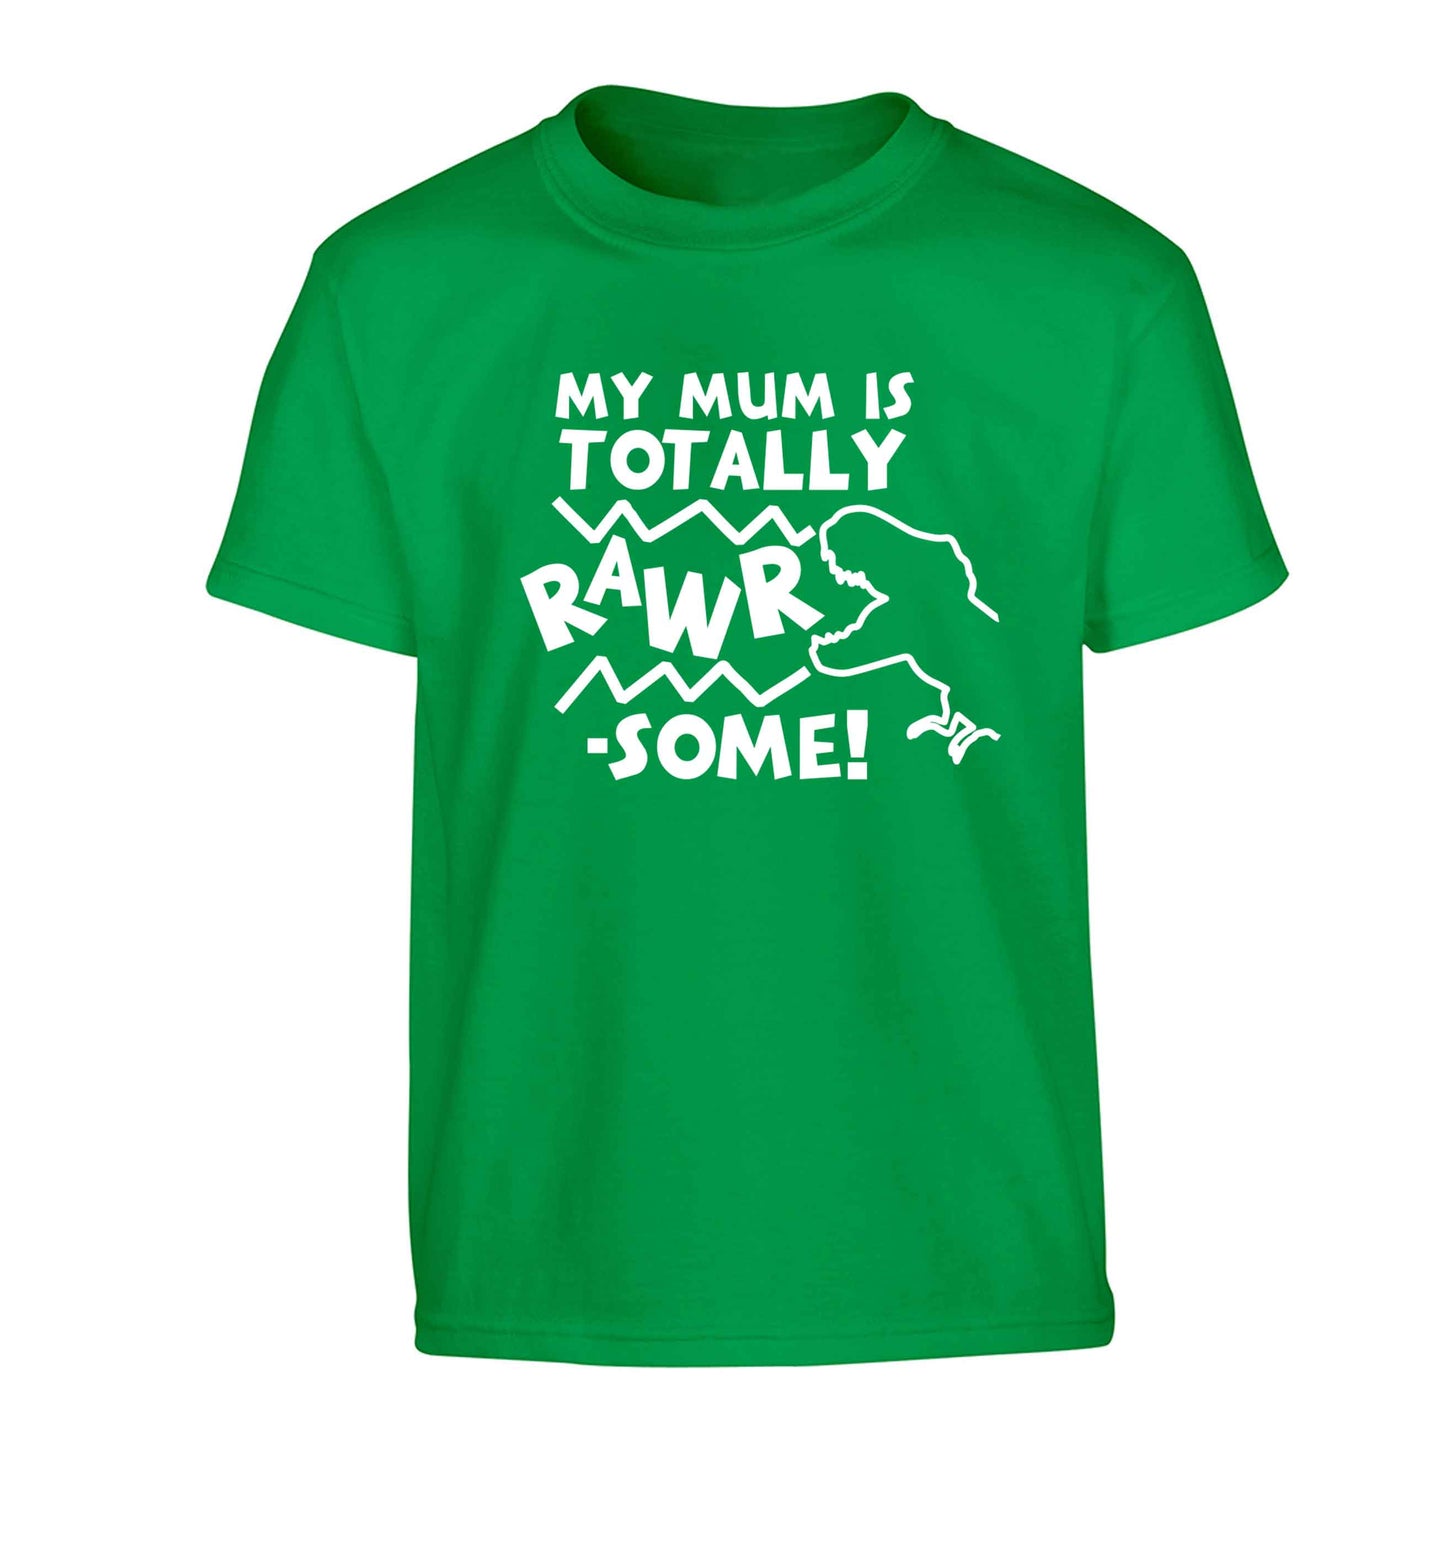 My mum is totally rawrsome Children's green Tshirt 12-13 Years